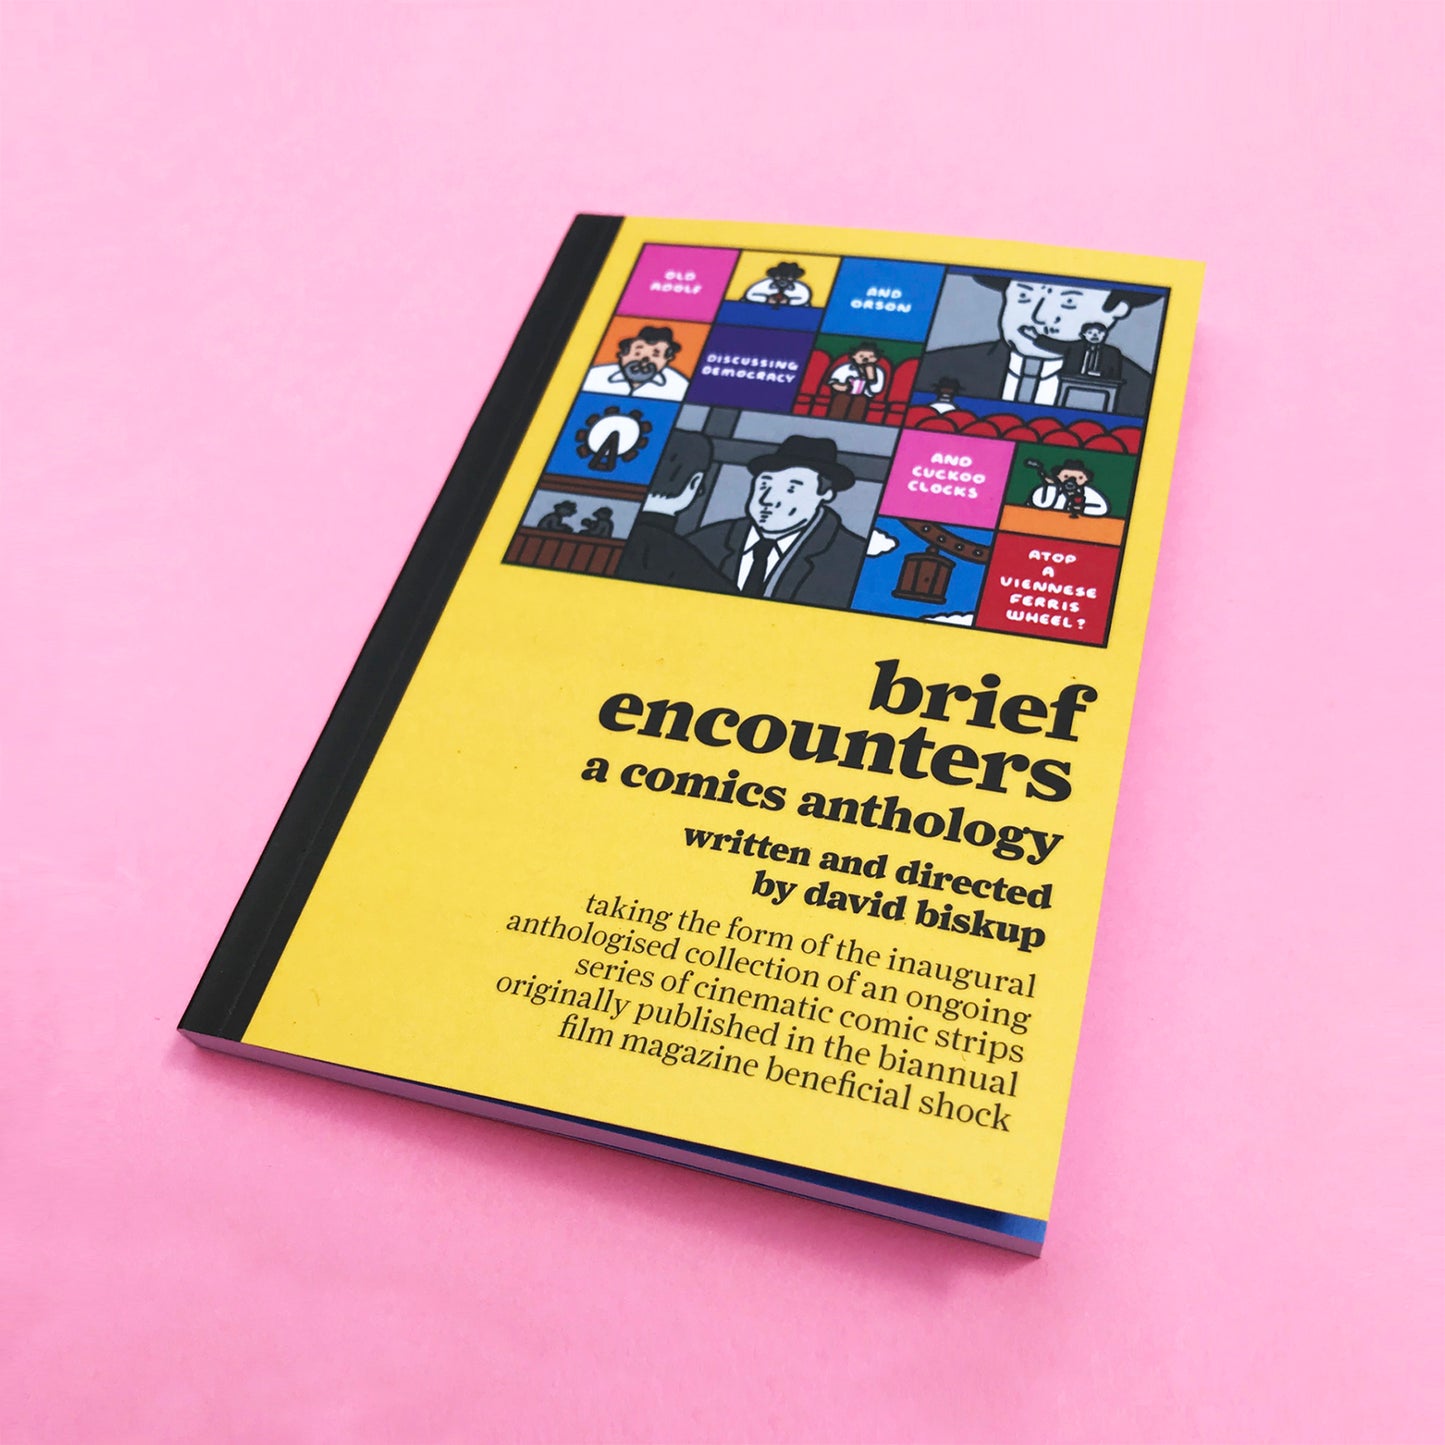 'Brief Encounters' by David Biskup